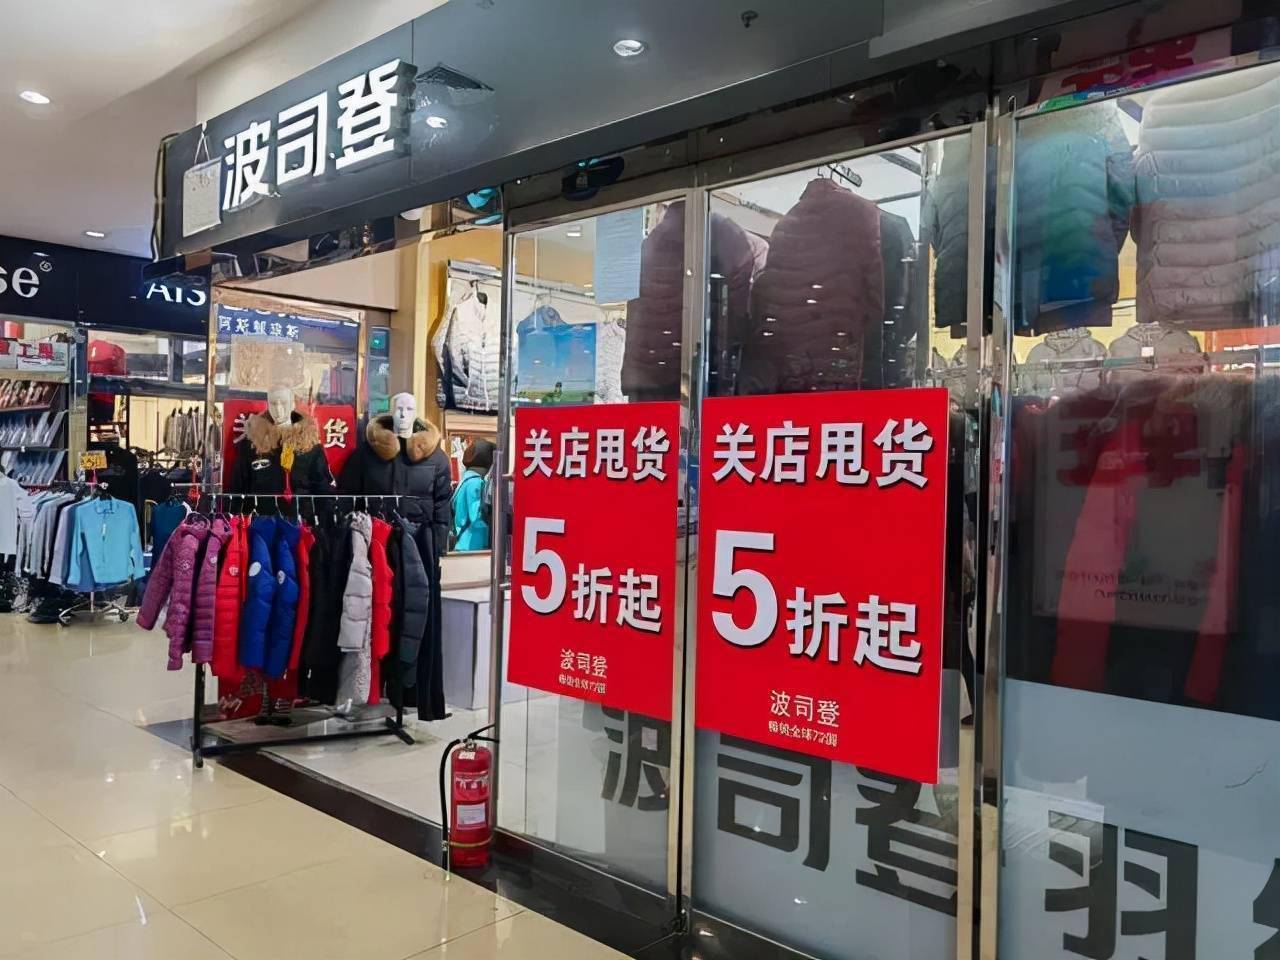 大红门地区依托北京地缘优势,建立了典型的二级服装批发市场,成为南北